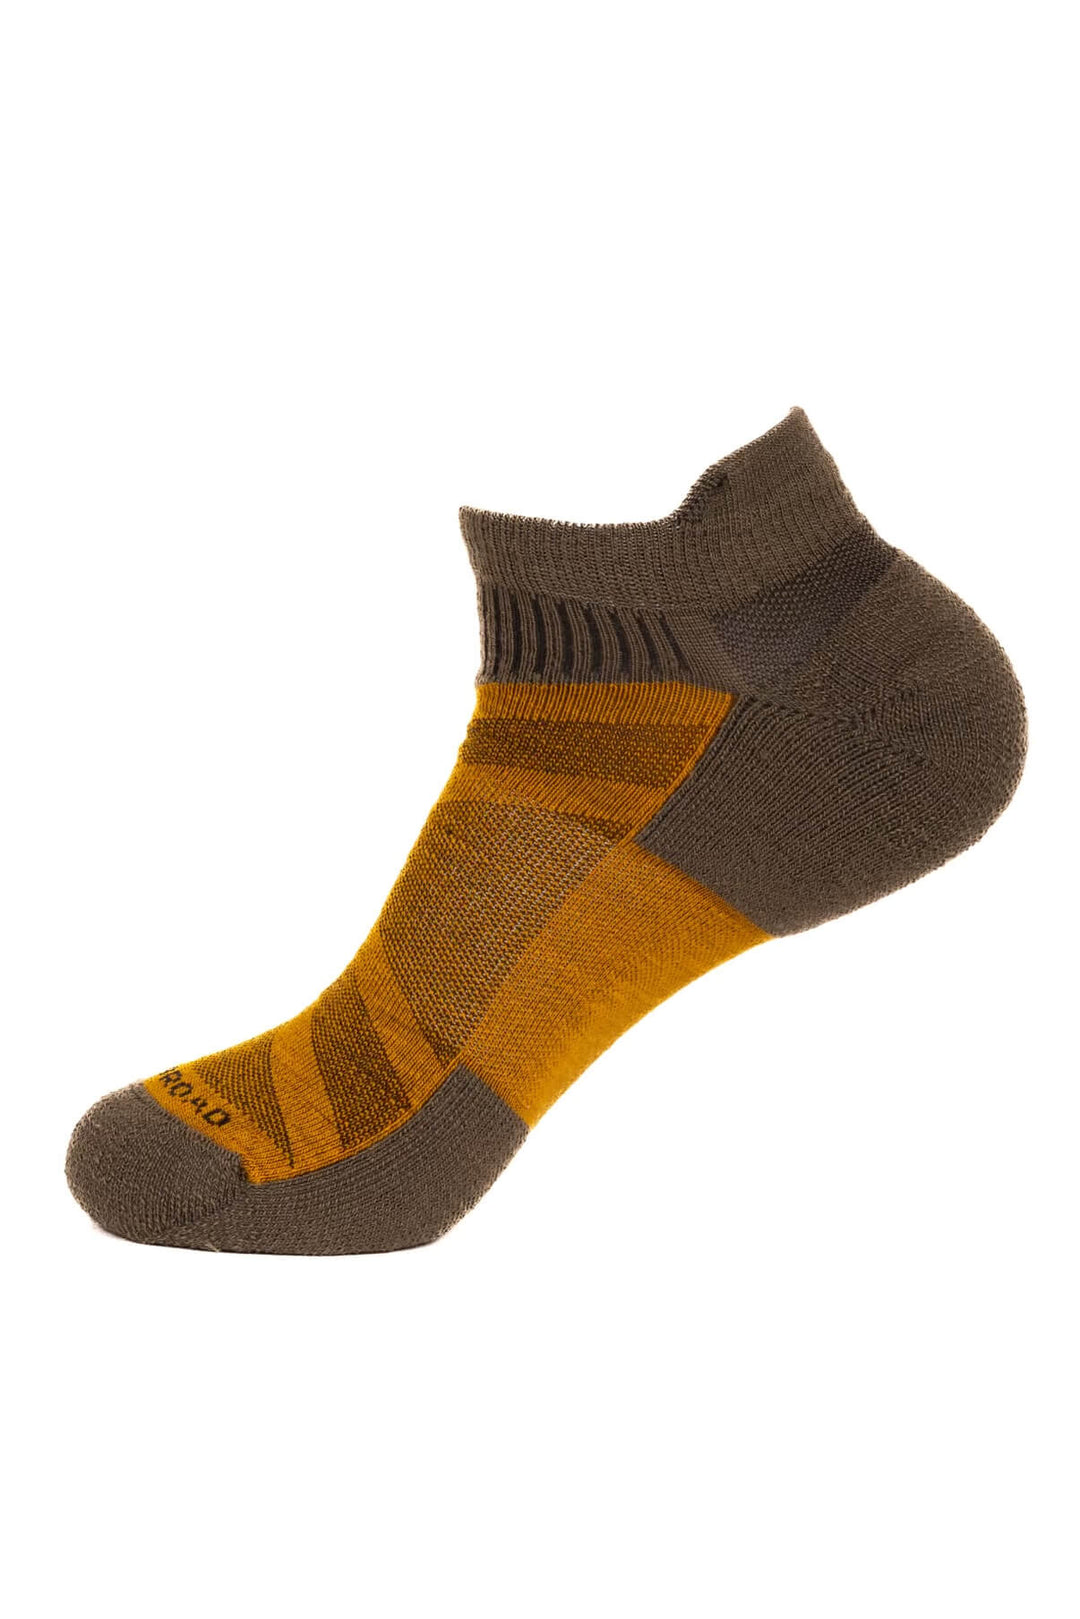 Sheeple Merino Sock - Ankle Height - Soft - Woodroad Gear Co.